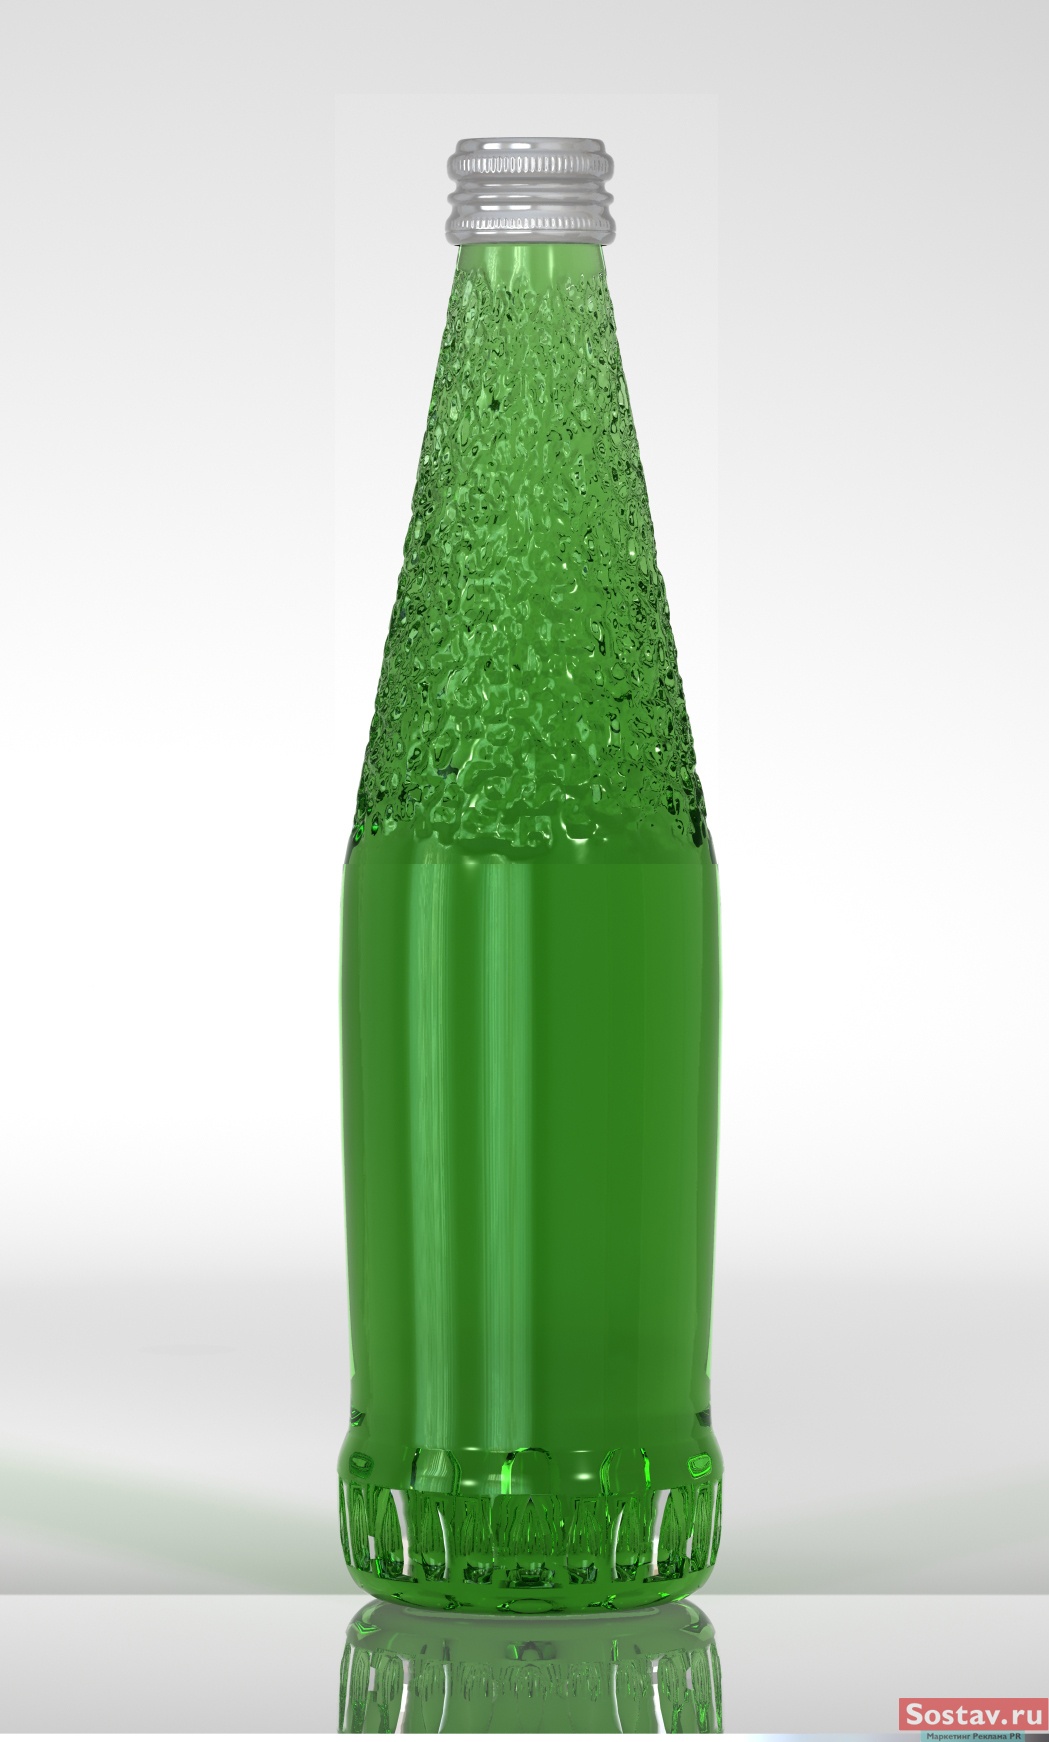 Вода в зеленой стеклянной бутылке. Стеклянная бутылка. Бутылка зеленая стеклянная. Зеленая пластиковая бутылка. Лимонад в бутылке.